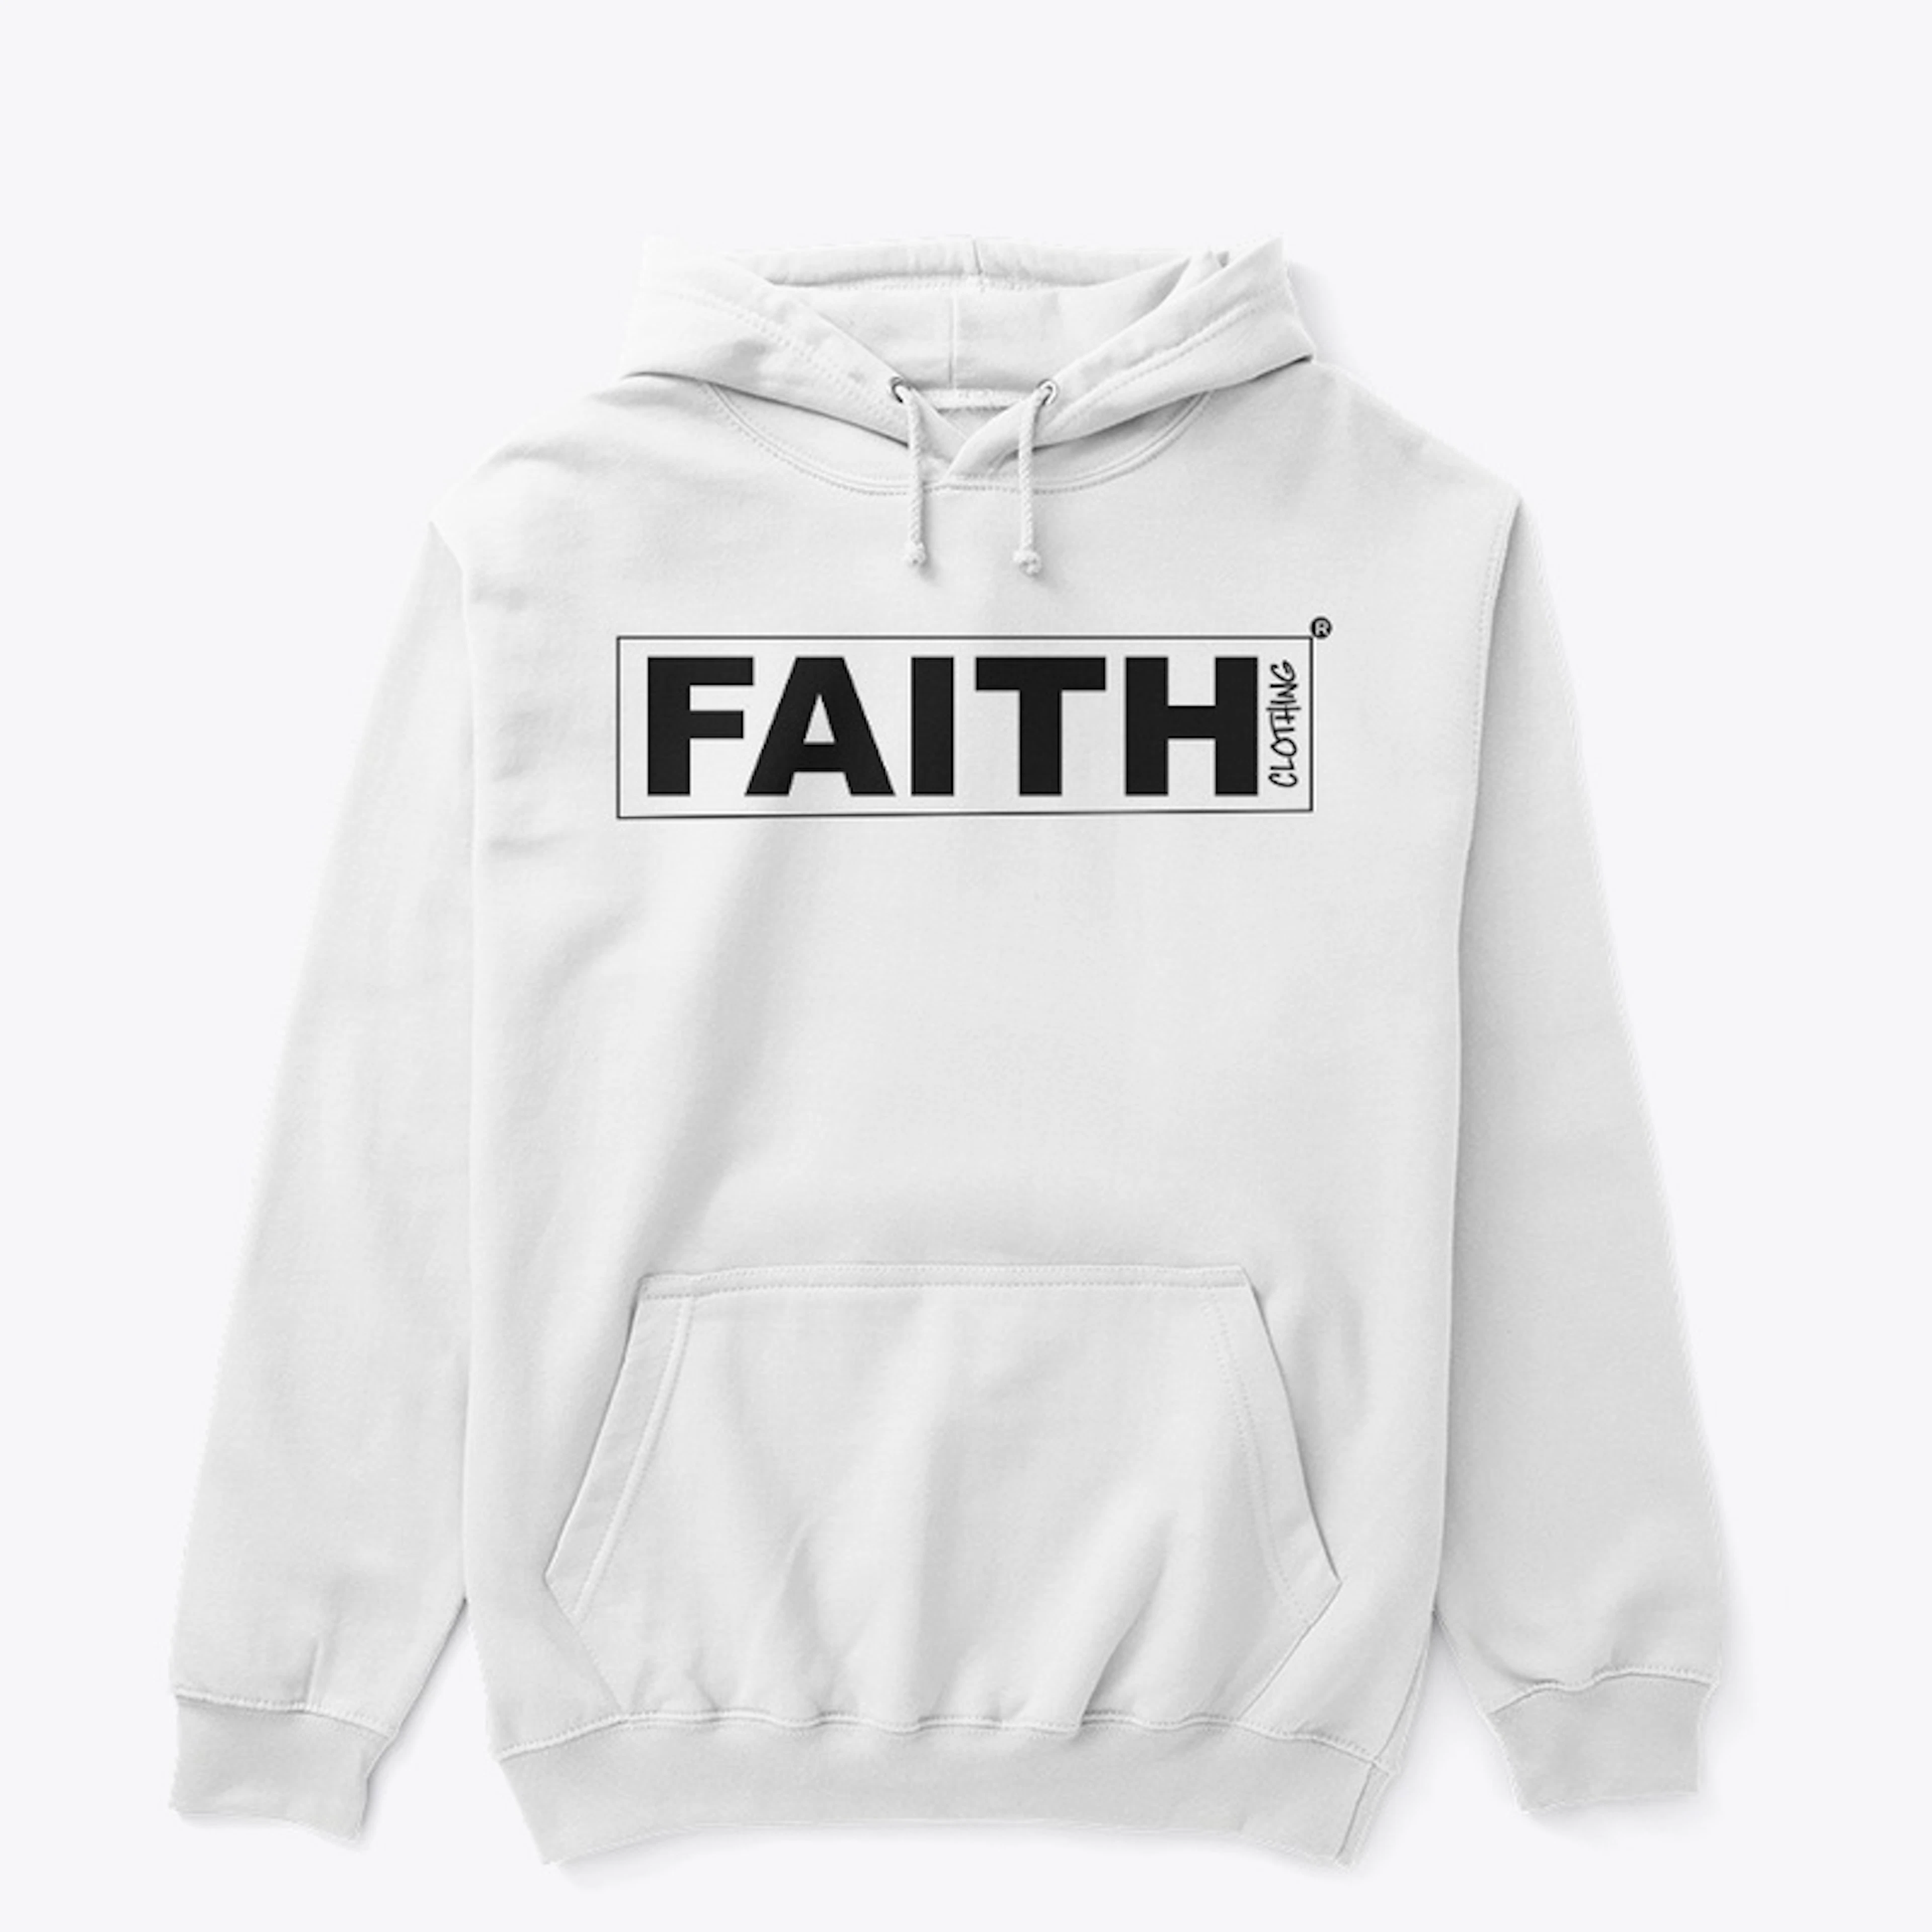 FAITH CLOTHING